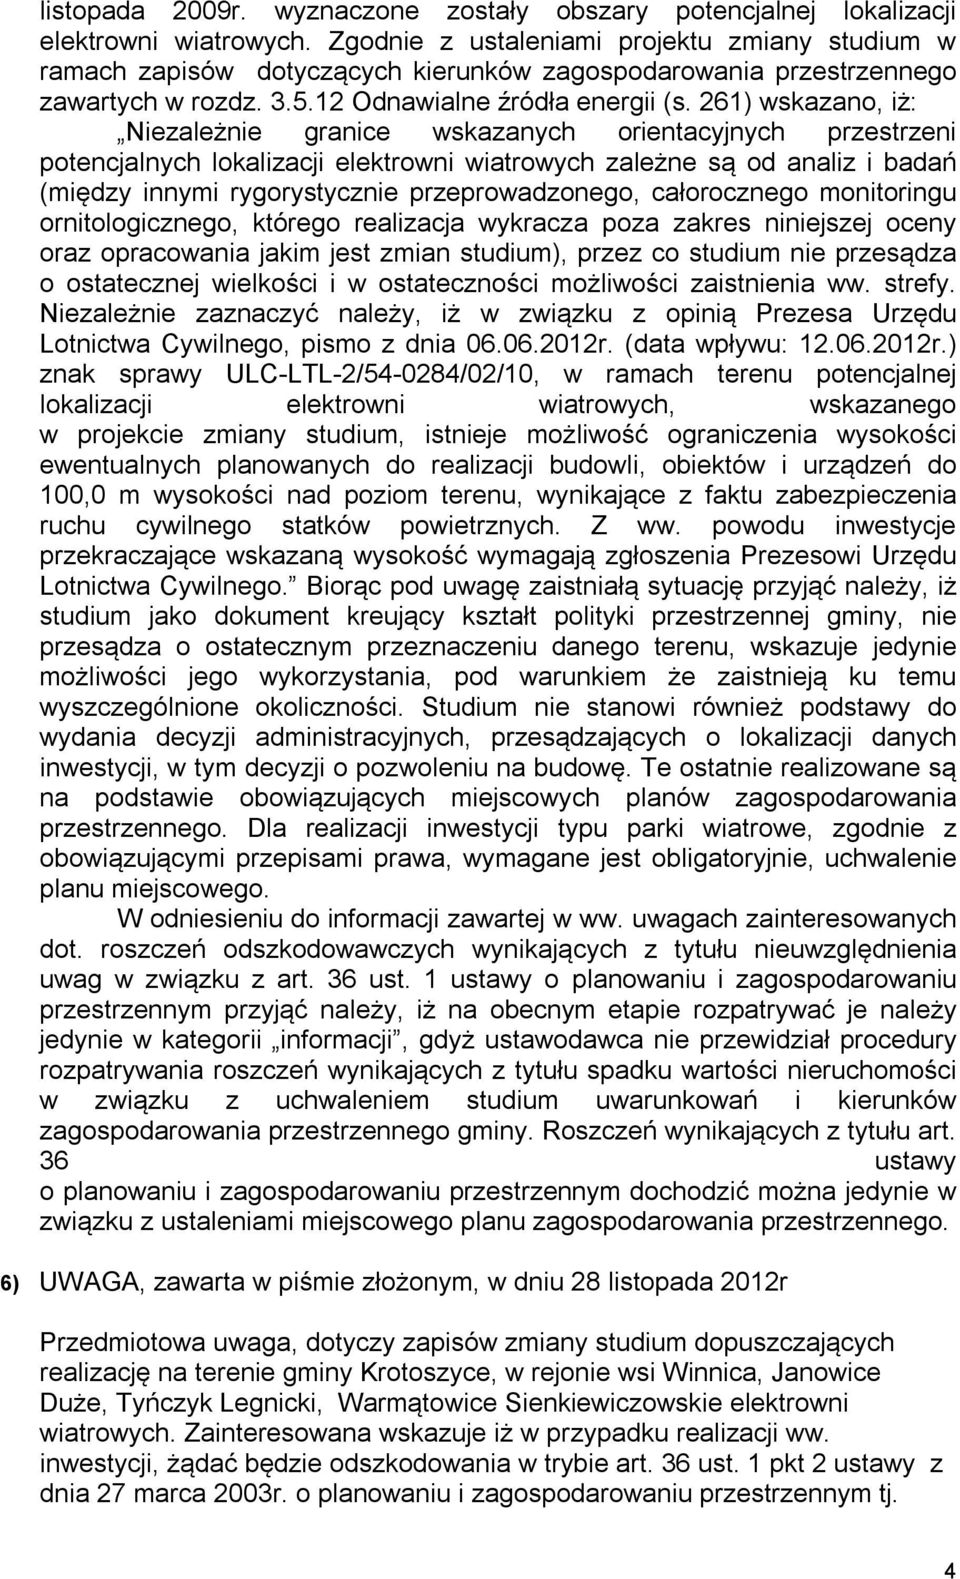 złożonym, w dniu 28 listopada 2012r Przedmiotowa uwaga, dotyczy zapisów zmiany studium dopuszczających realizację na terenie gminy Krotoszyce, w rejonie wsi Winnica, Janowice Duże, Tyńczyk